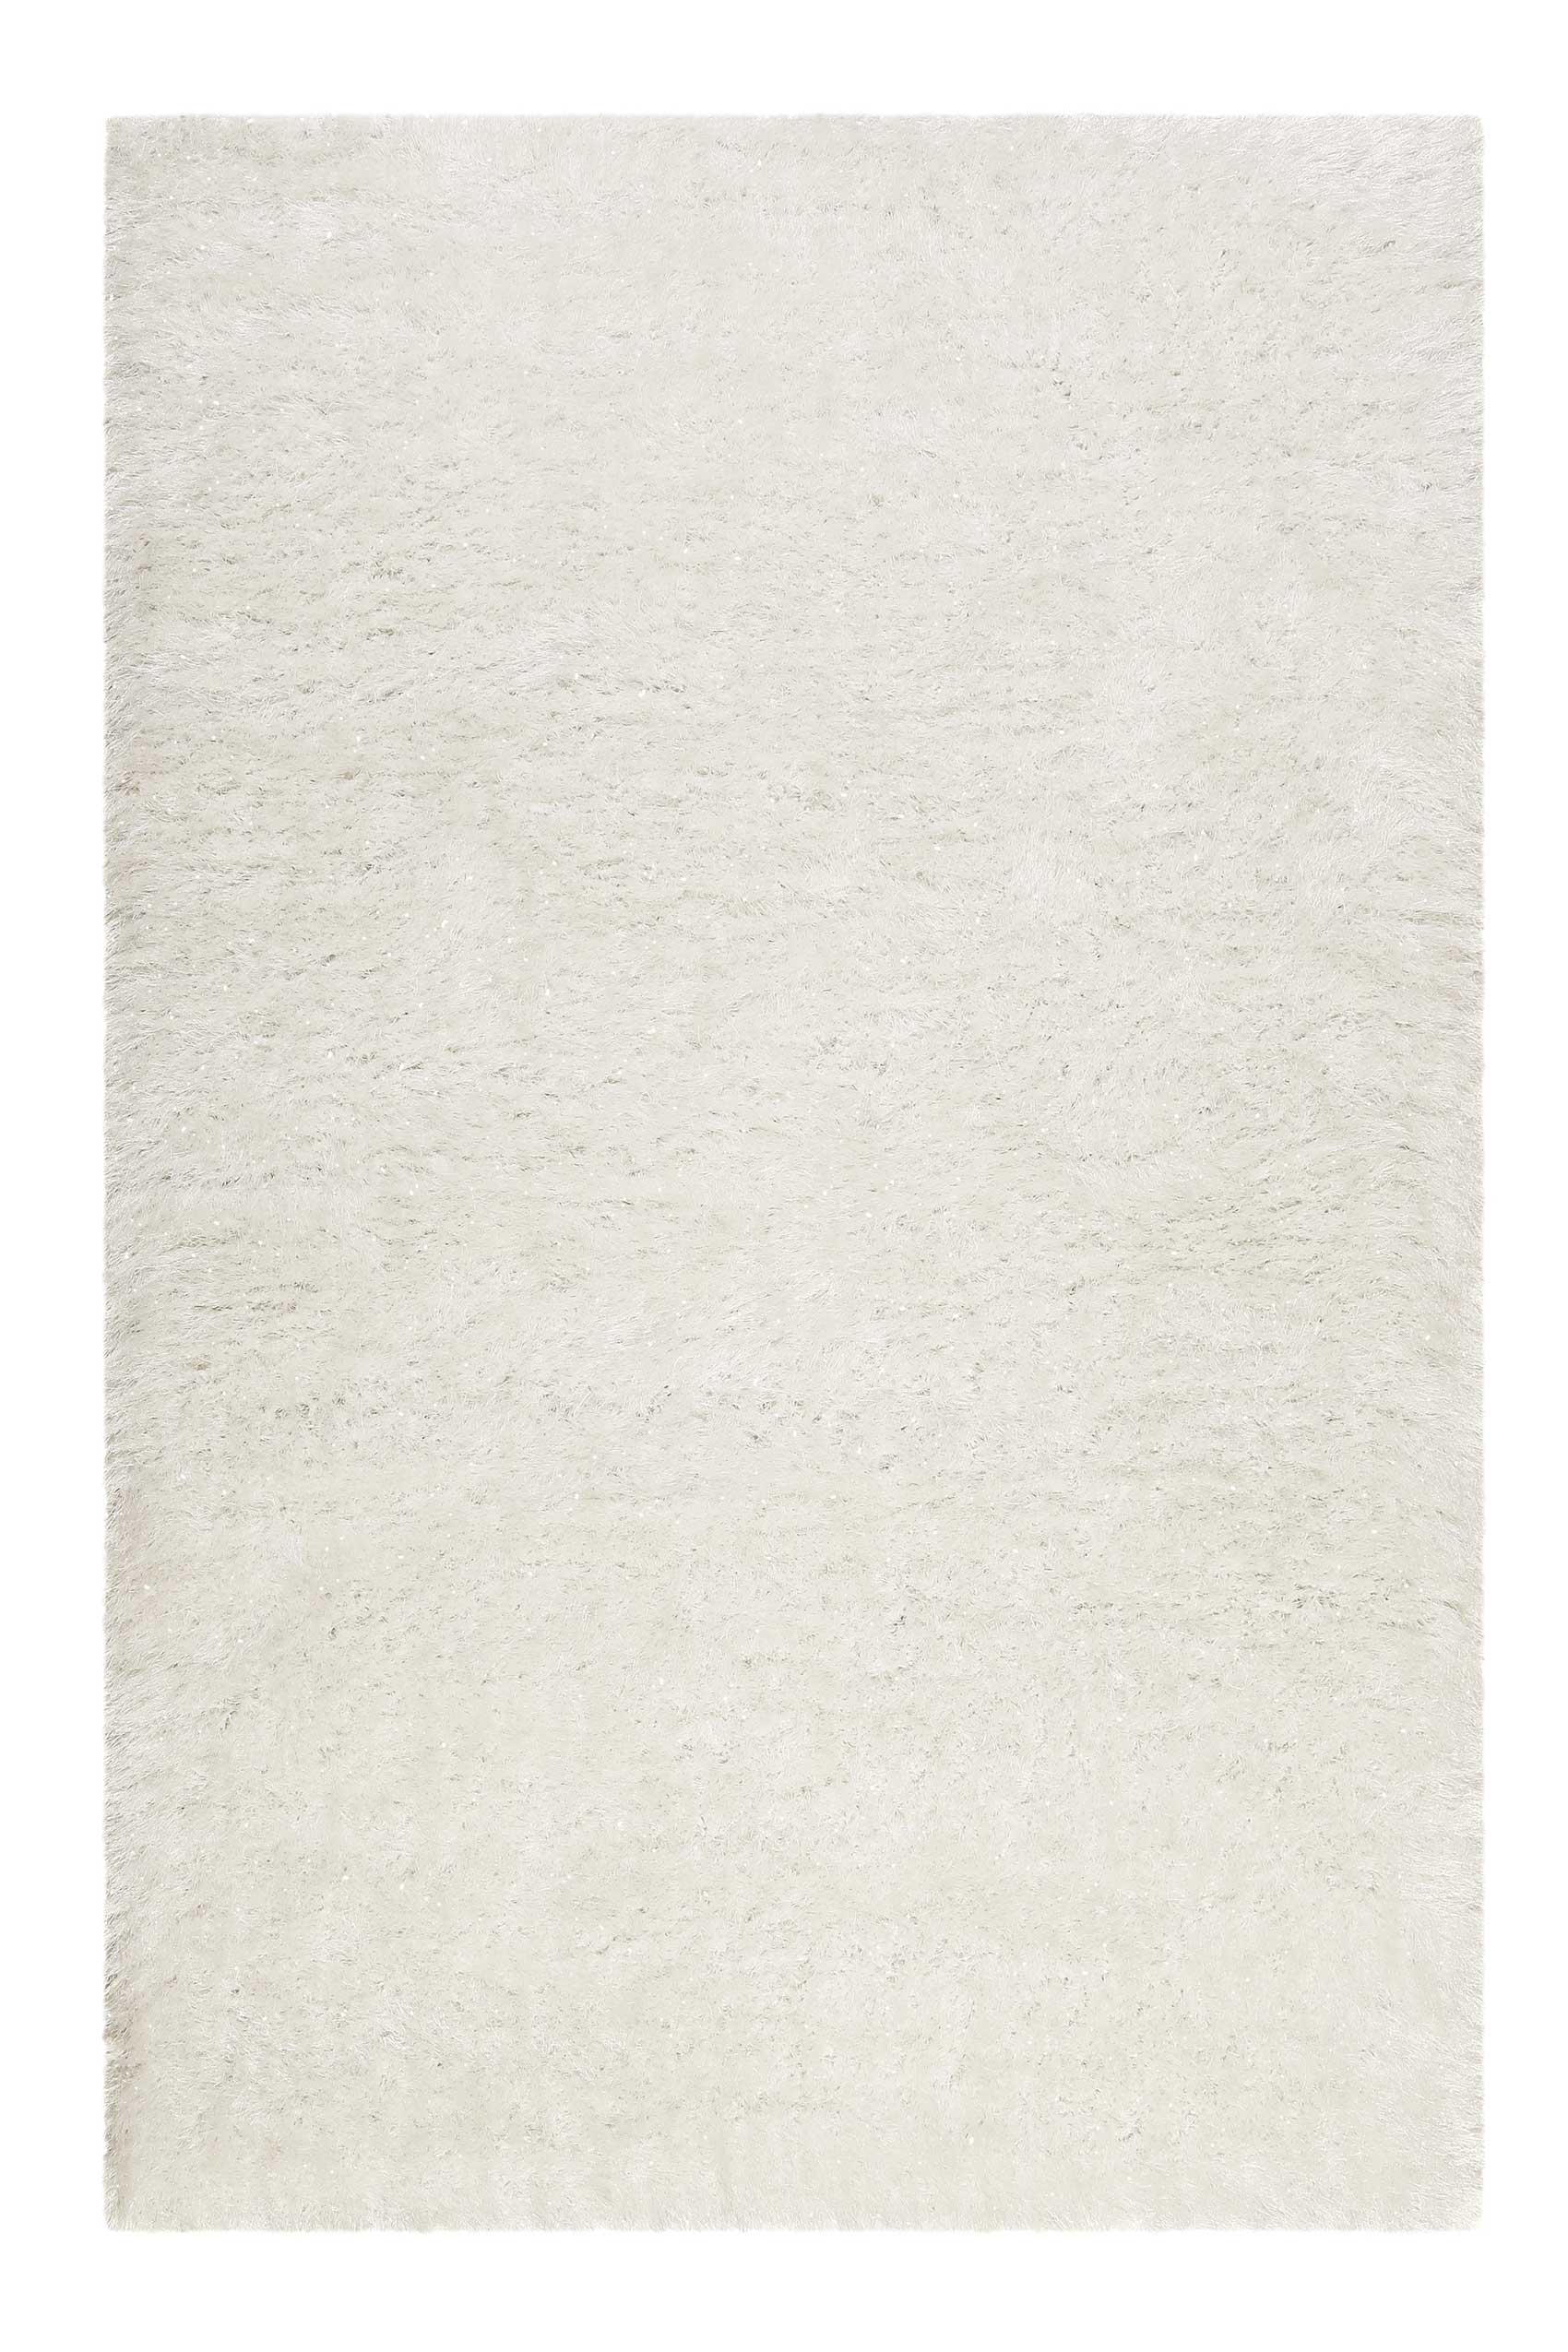 Teppich Creme Weiß glänzend Hochflor » Shiny Touch « WECONhome - Ansicht 1